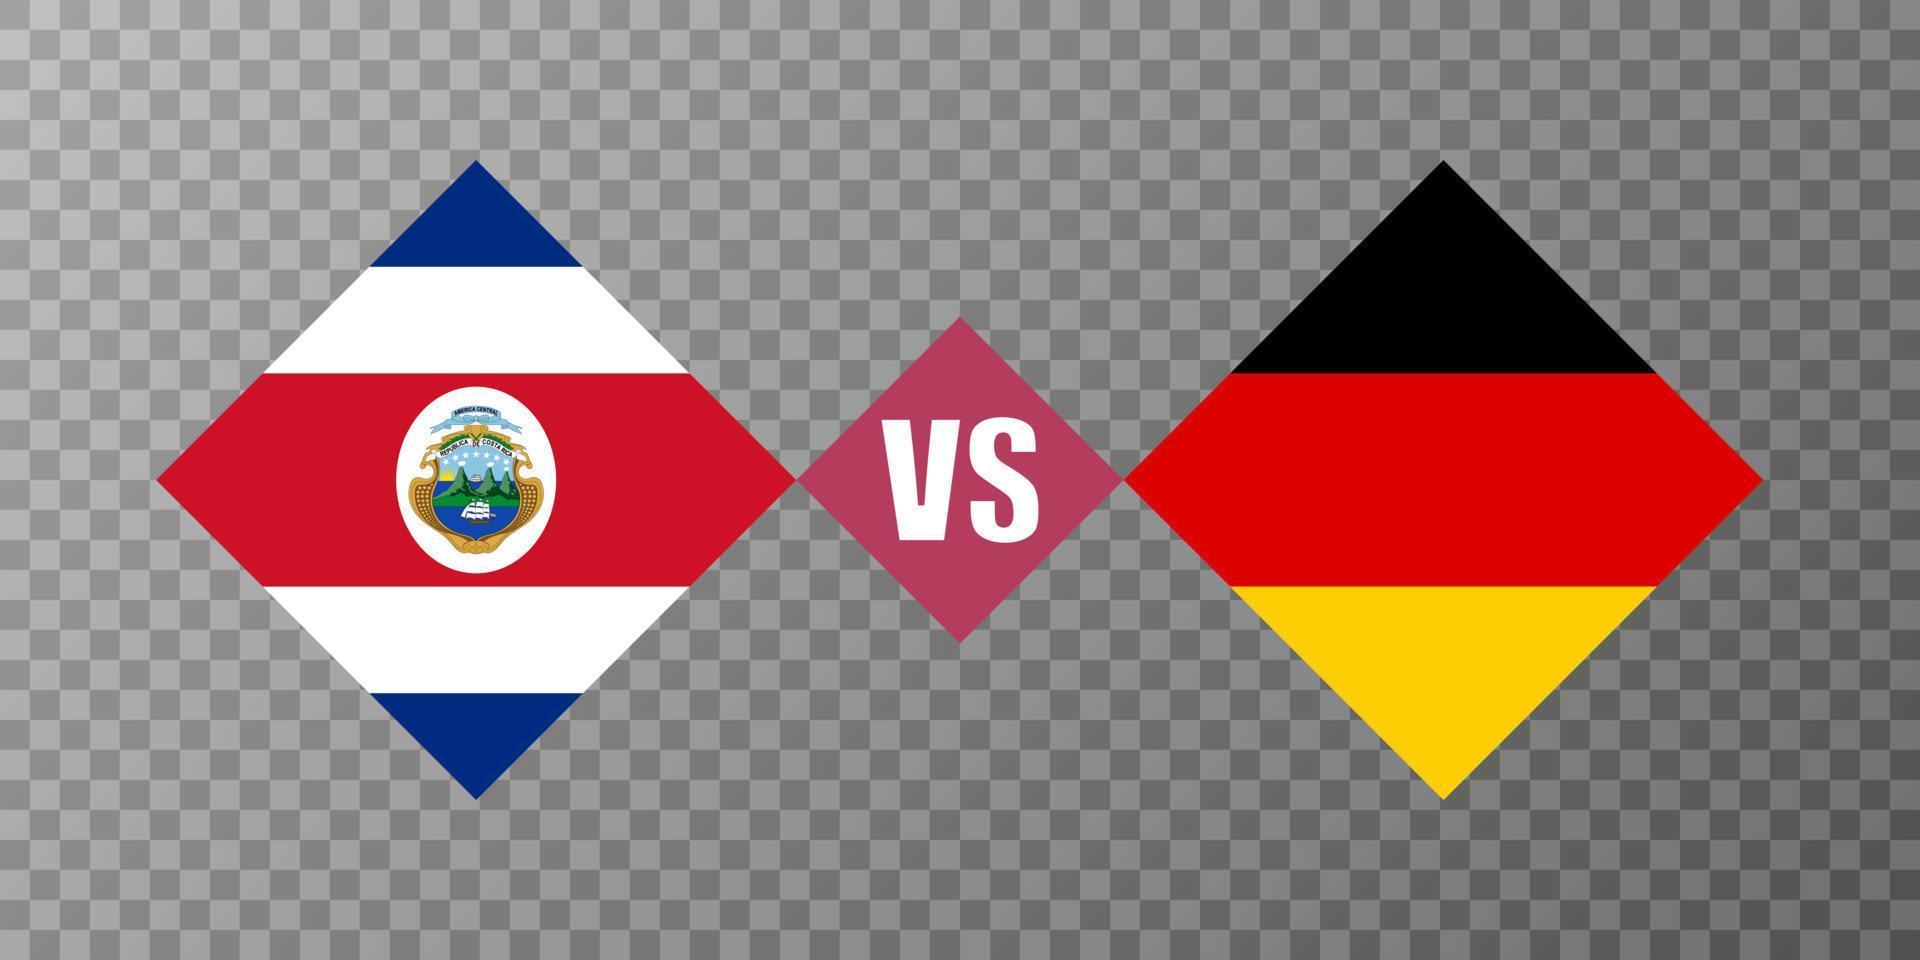 Costa Rica vs conceito de bandeira da Alemanha. ilustração vetorial. vetor